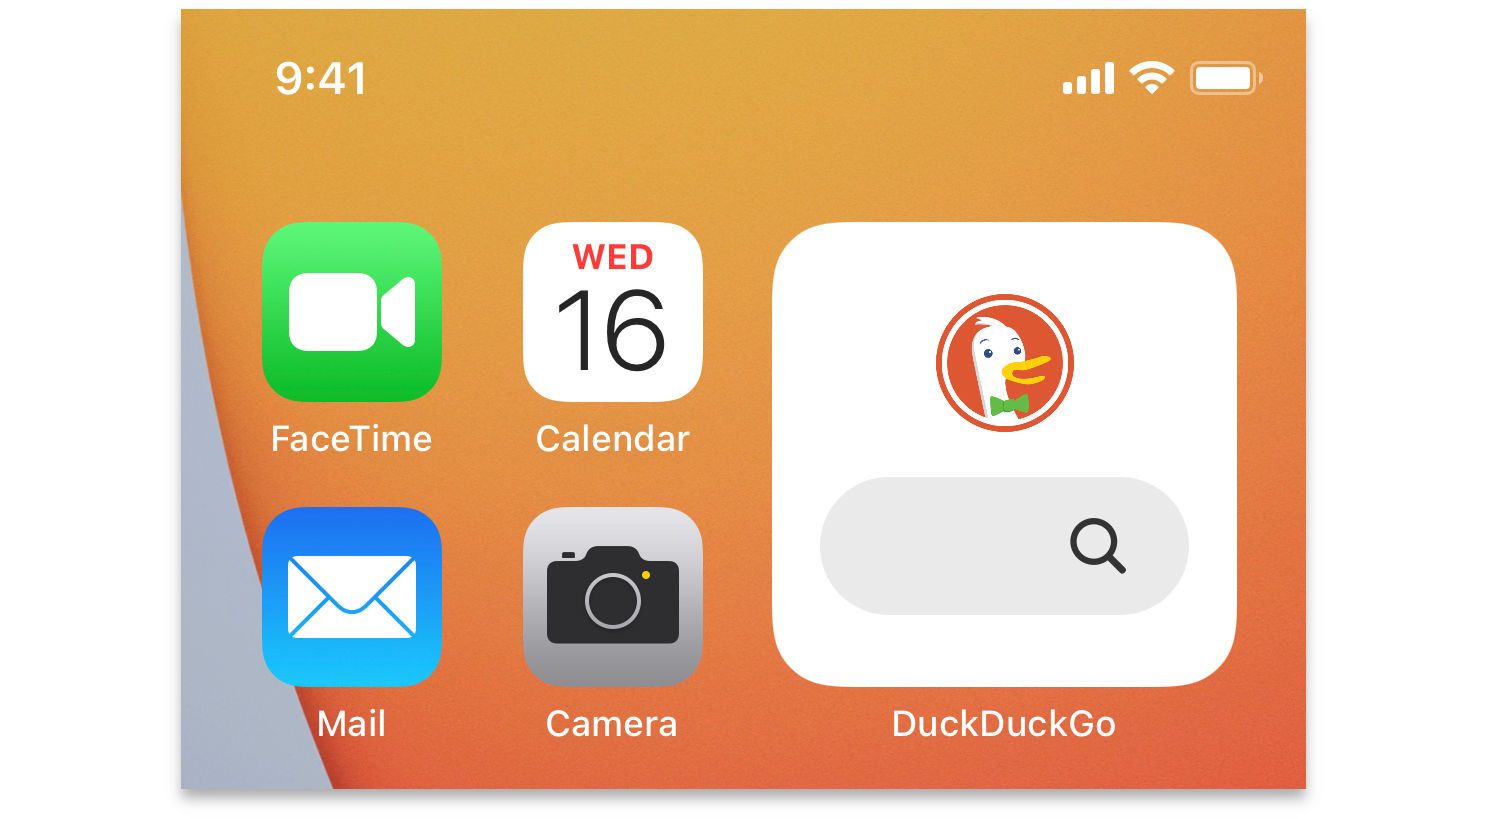 duckduckgo-privacy-browser-as-default4.jpg